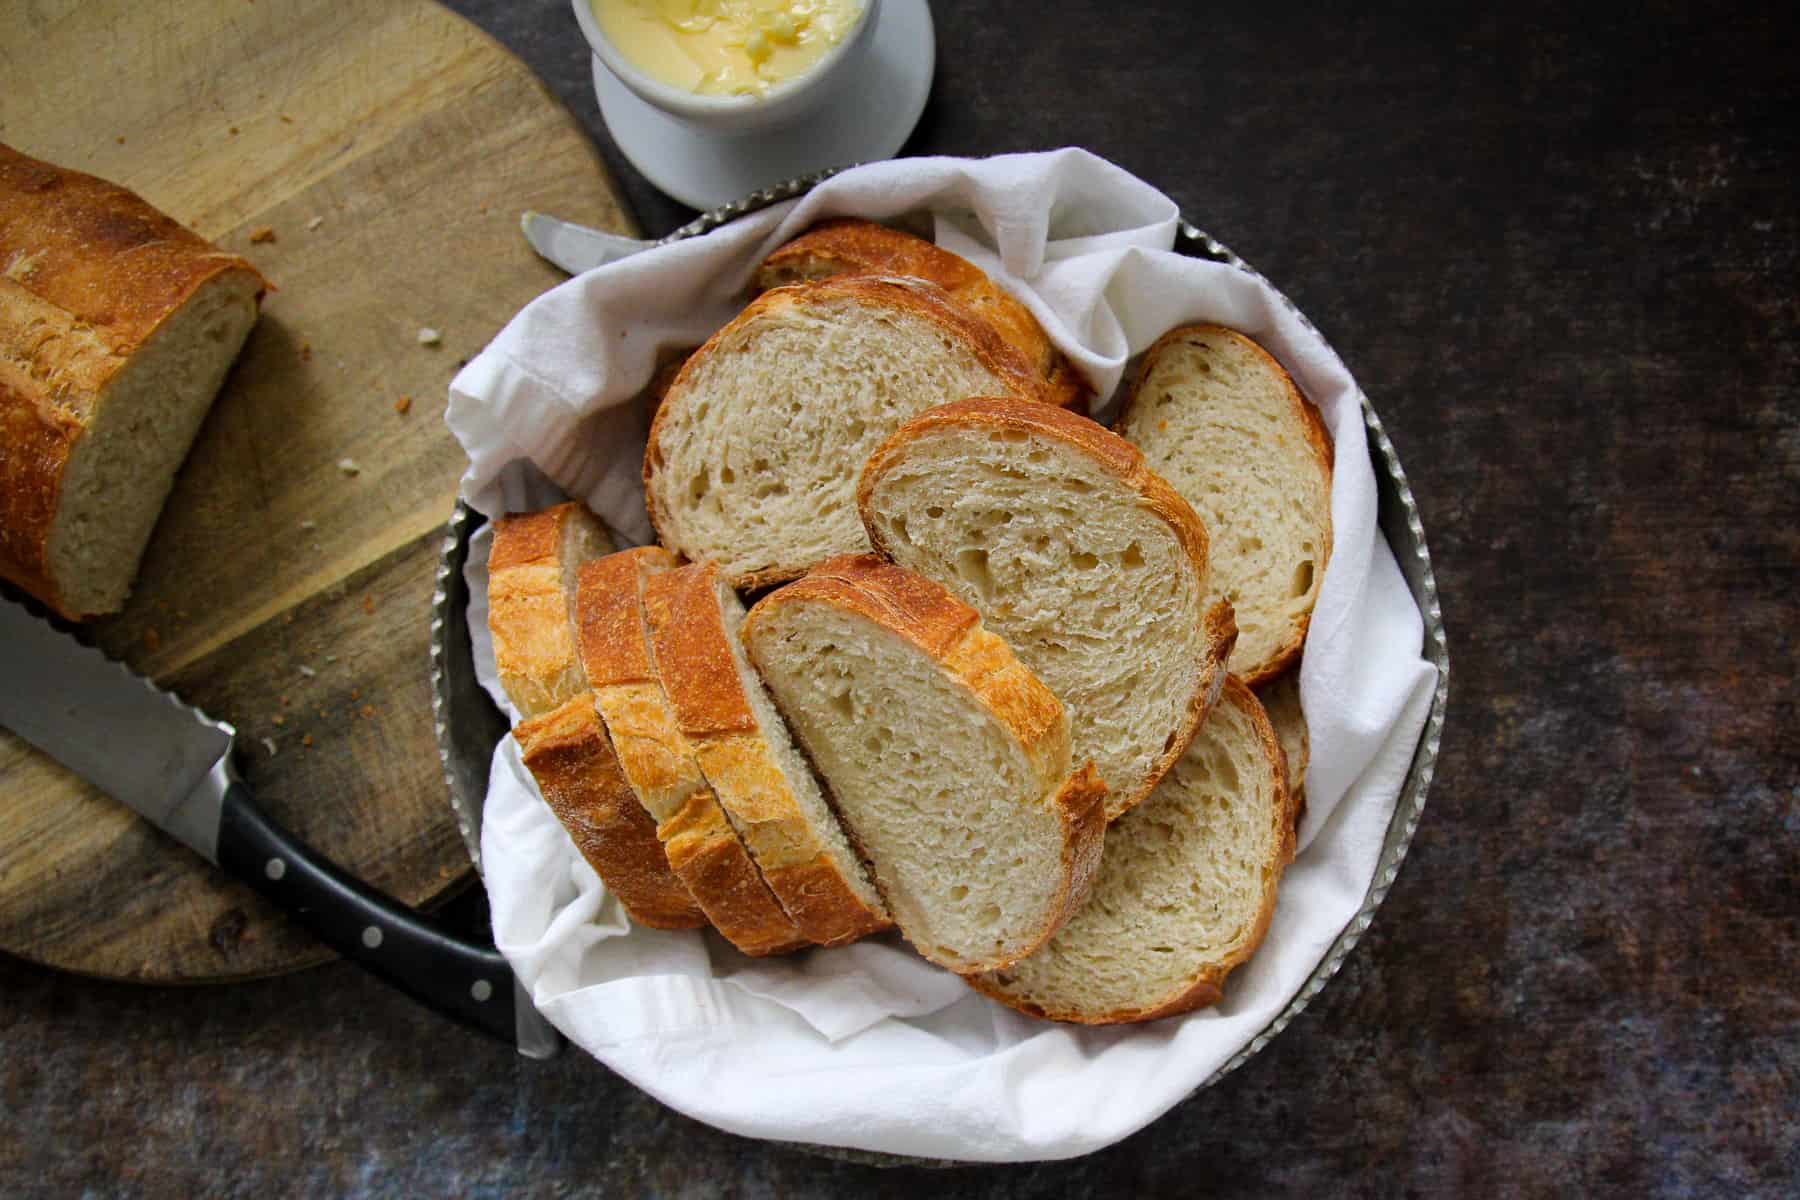 Bowl of Italian bread sliced